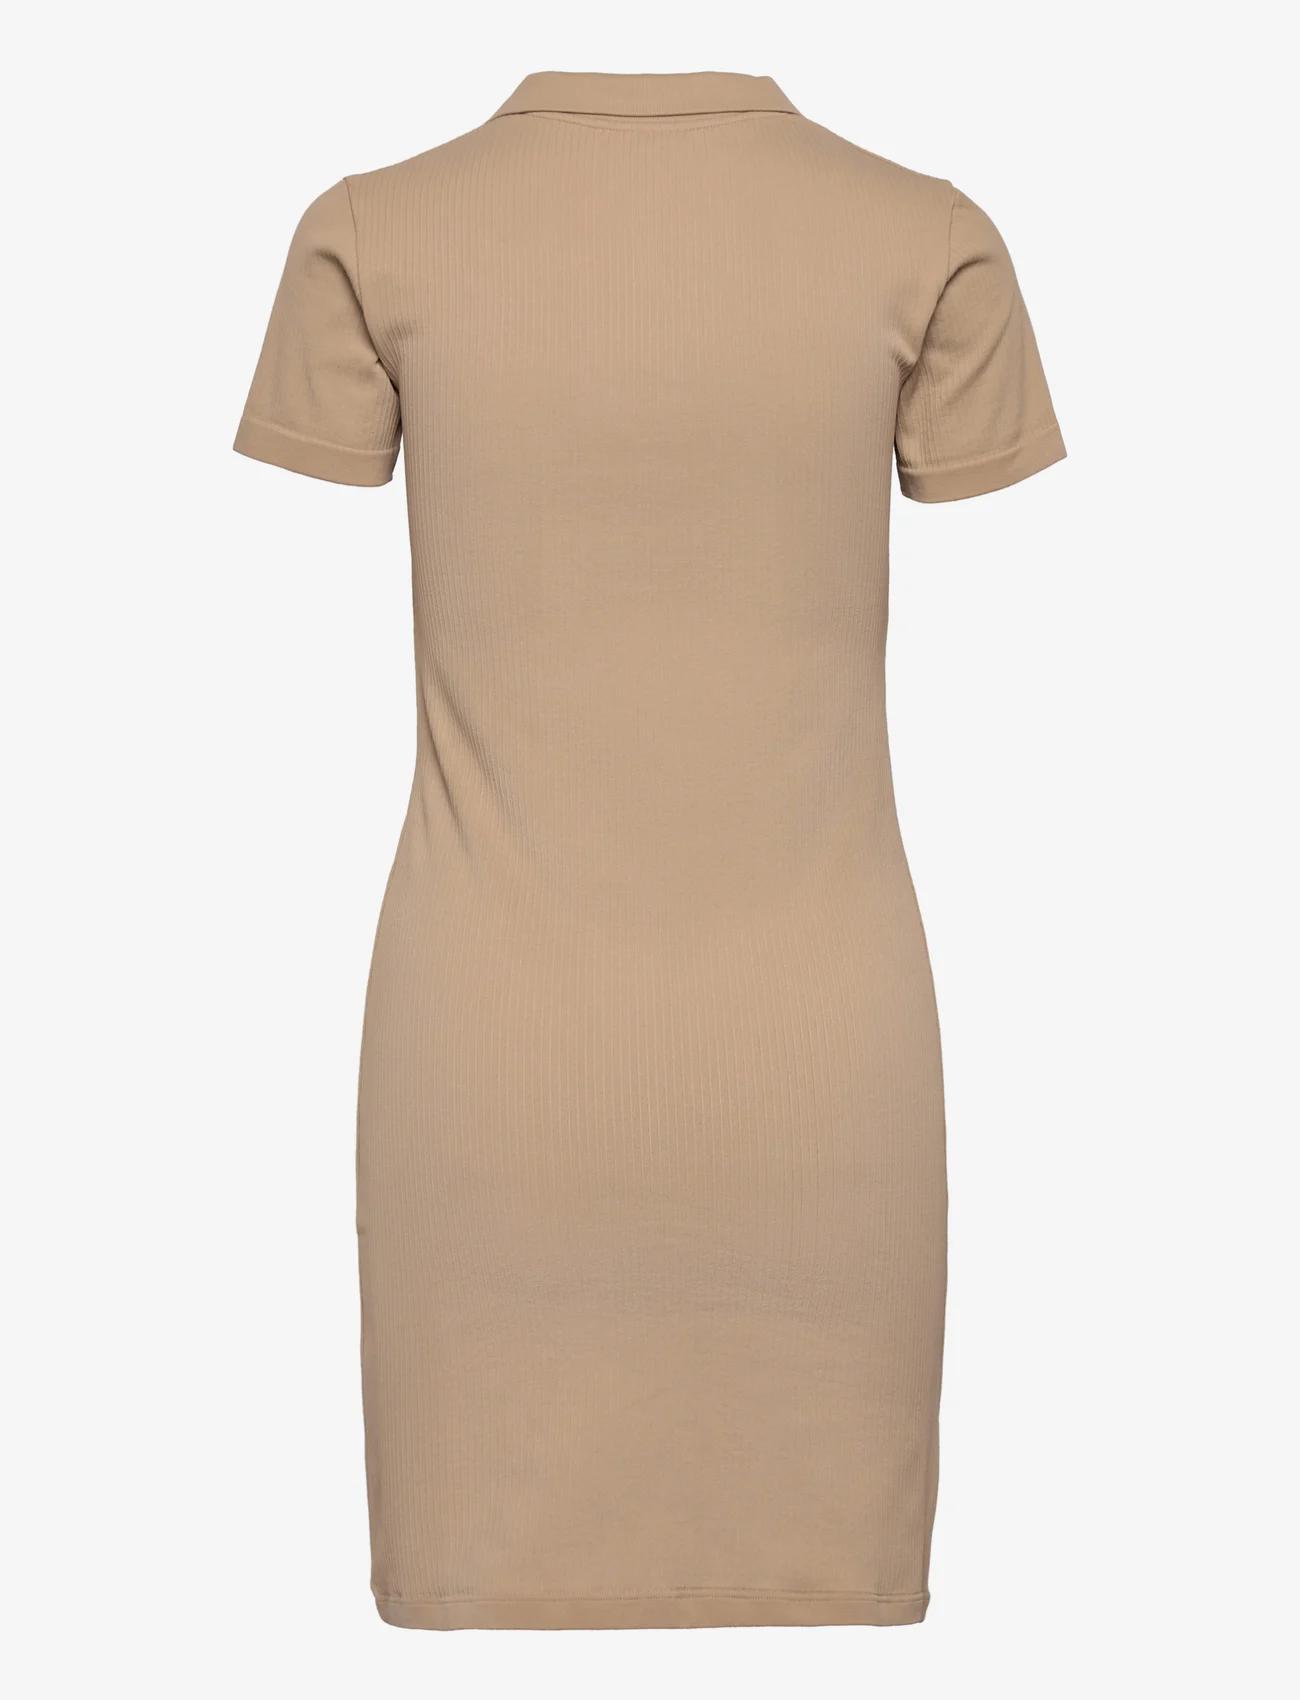 AIM'N - Ribbed Seamless Polo Dress - marškinėlių tipo suknelės - solid beige - 1